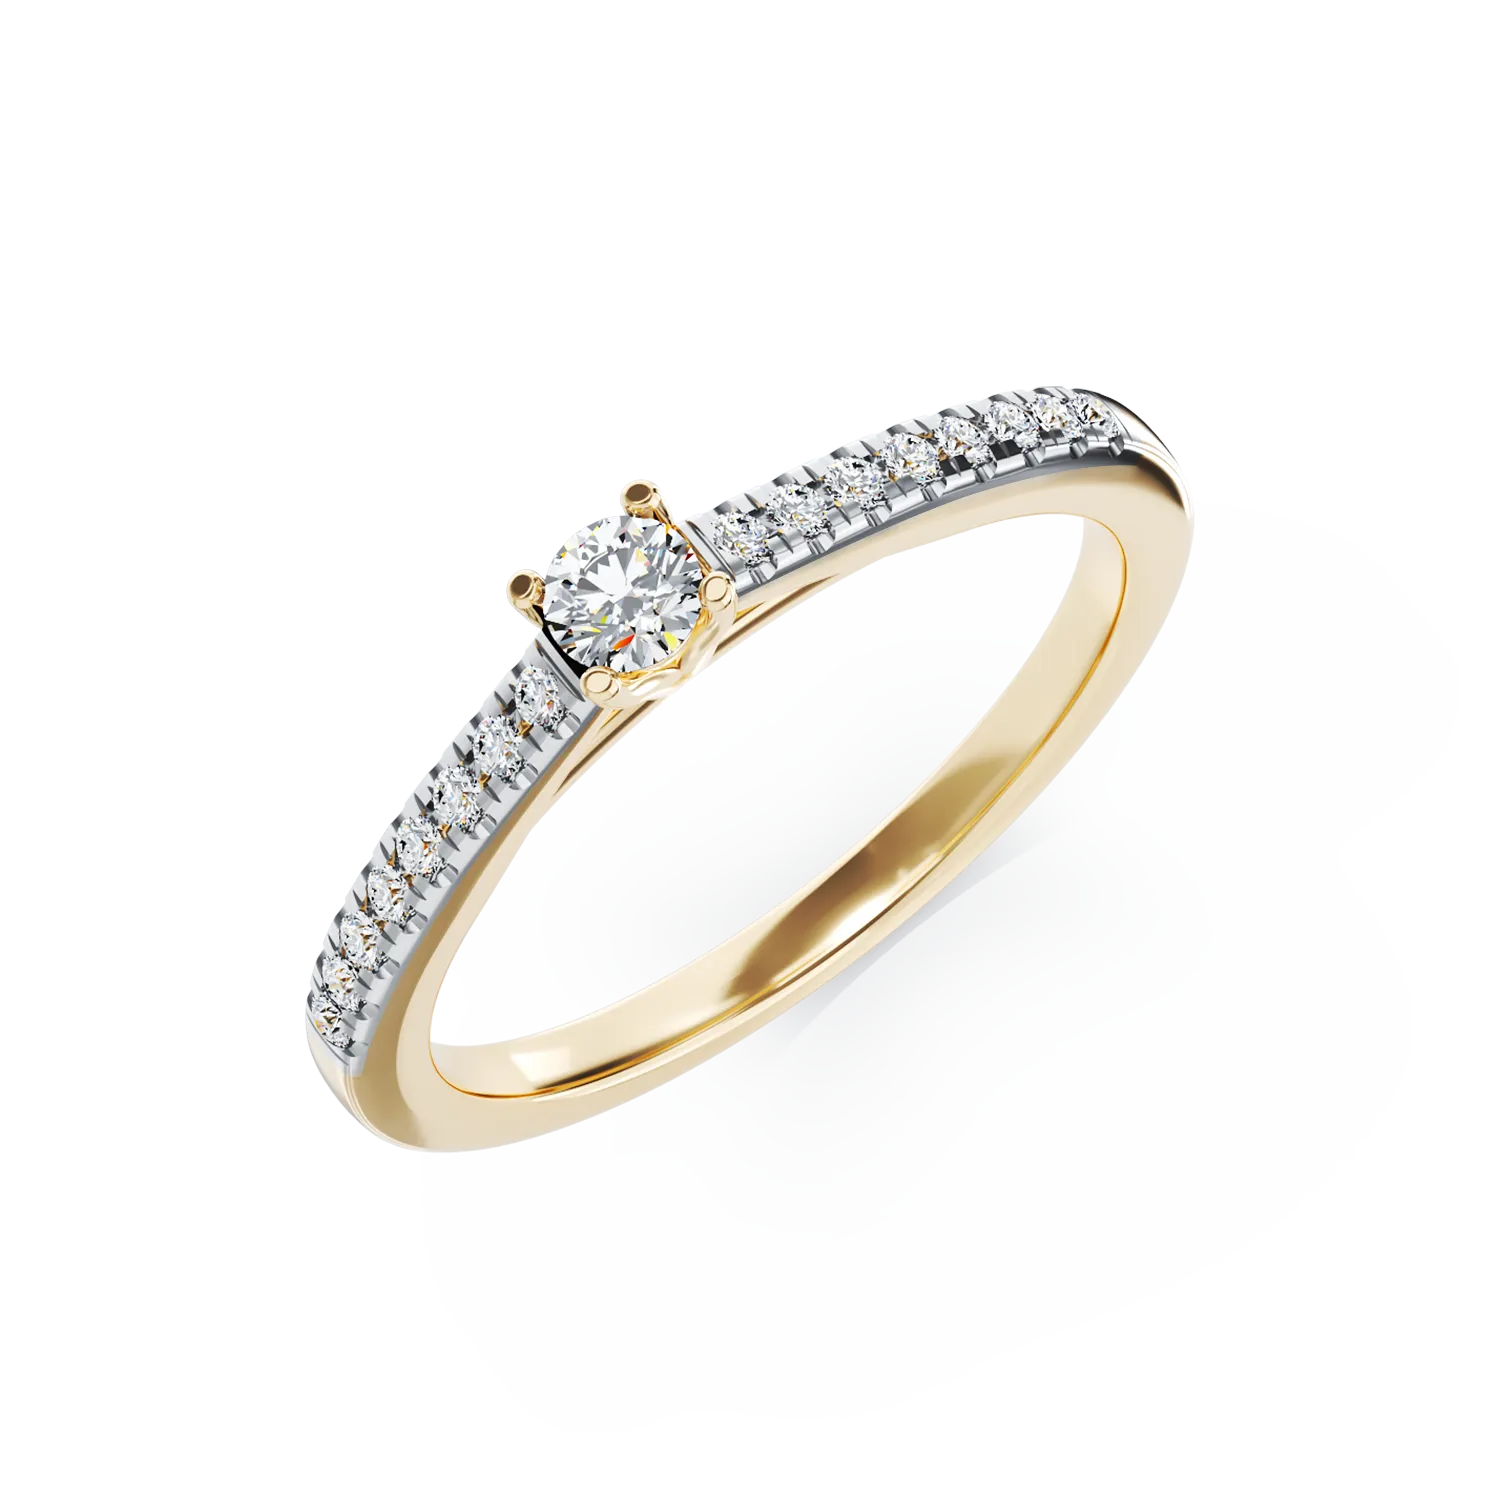 Eljegyzési gyűrű 18K-os sárga aranyból 0,26ct gyémánttal és 0,13ct gyémánttal. Gramm: 2,8